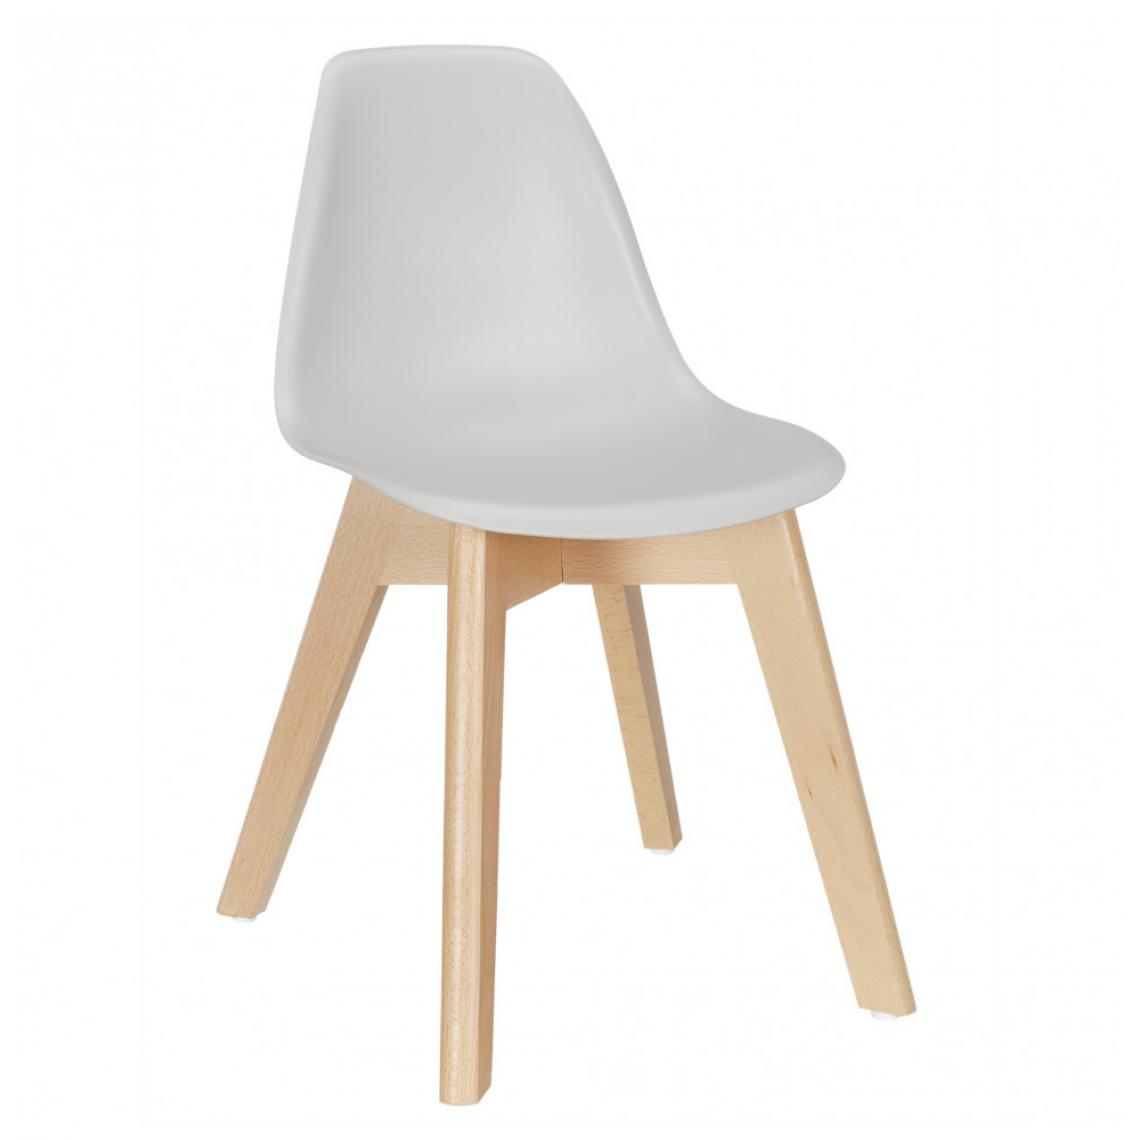 Ac-Deco - Chaise scandinave - Coque poudrée - L 30.5 cm x l 34.5 cm x H 56 cm - Gris - Chaises